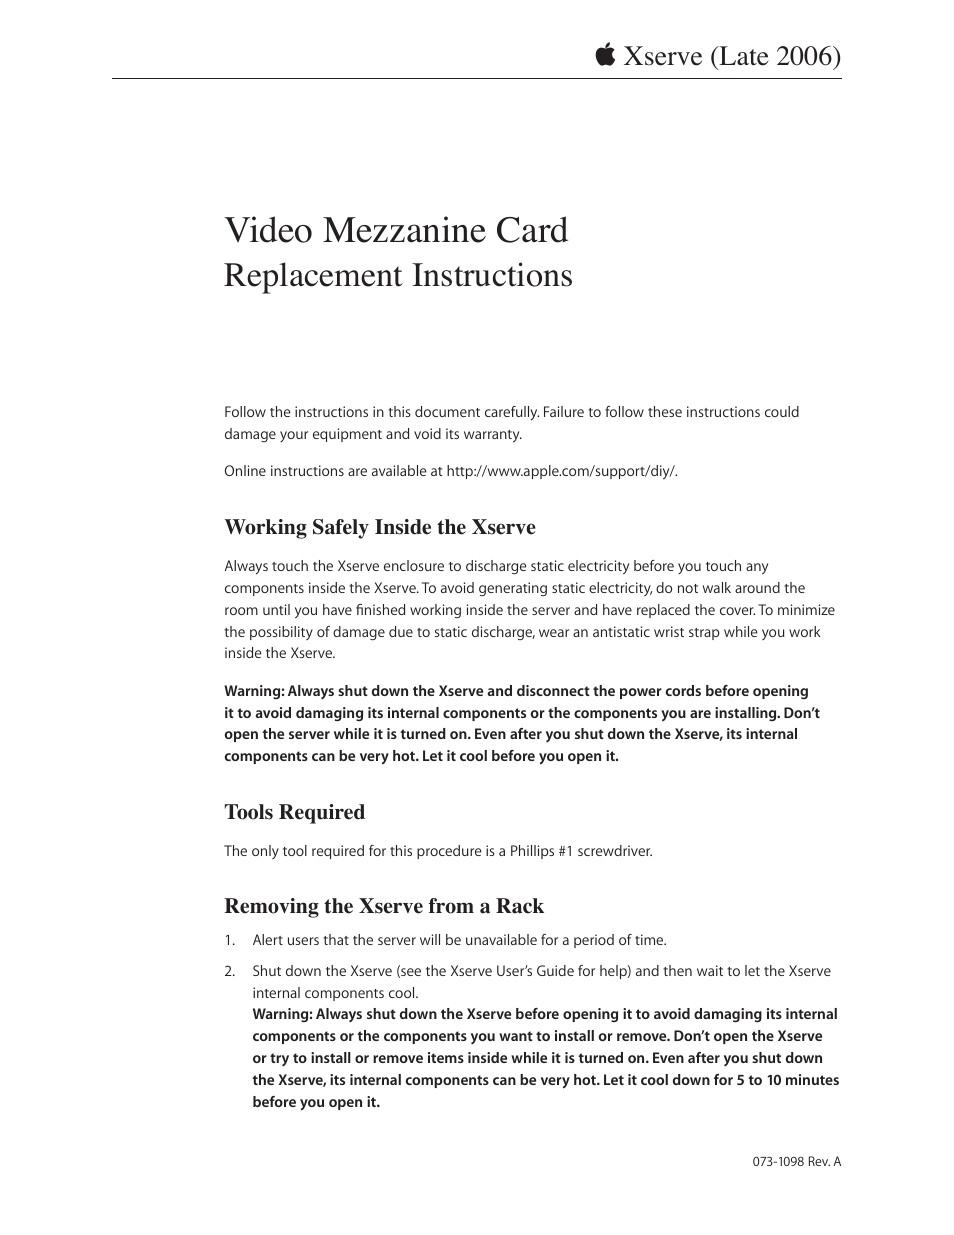 Xserve Intel (Late 2006) DIY Procedure for Video Mezzanine Card